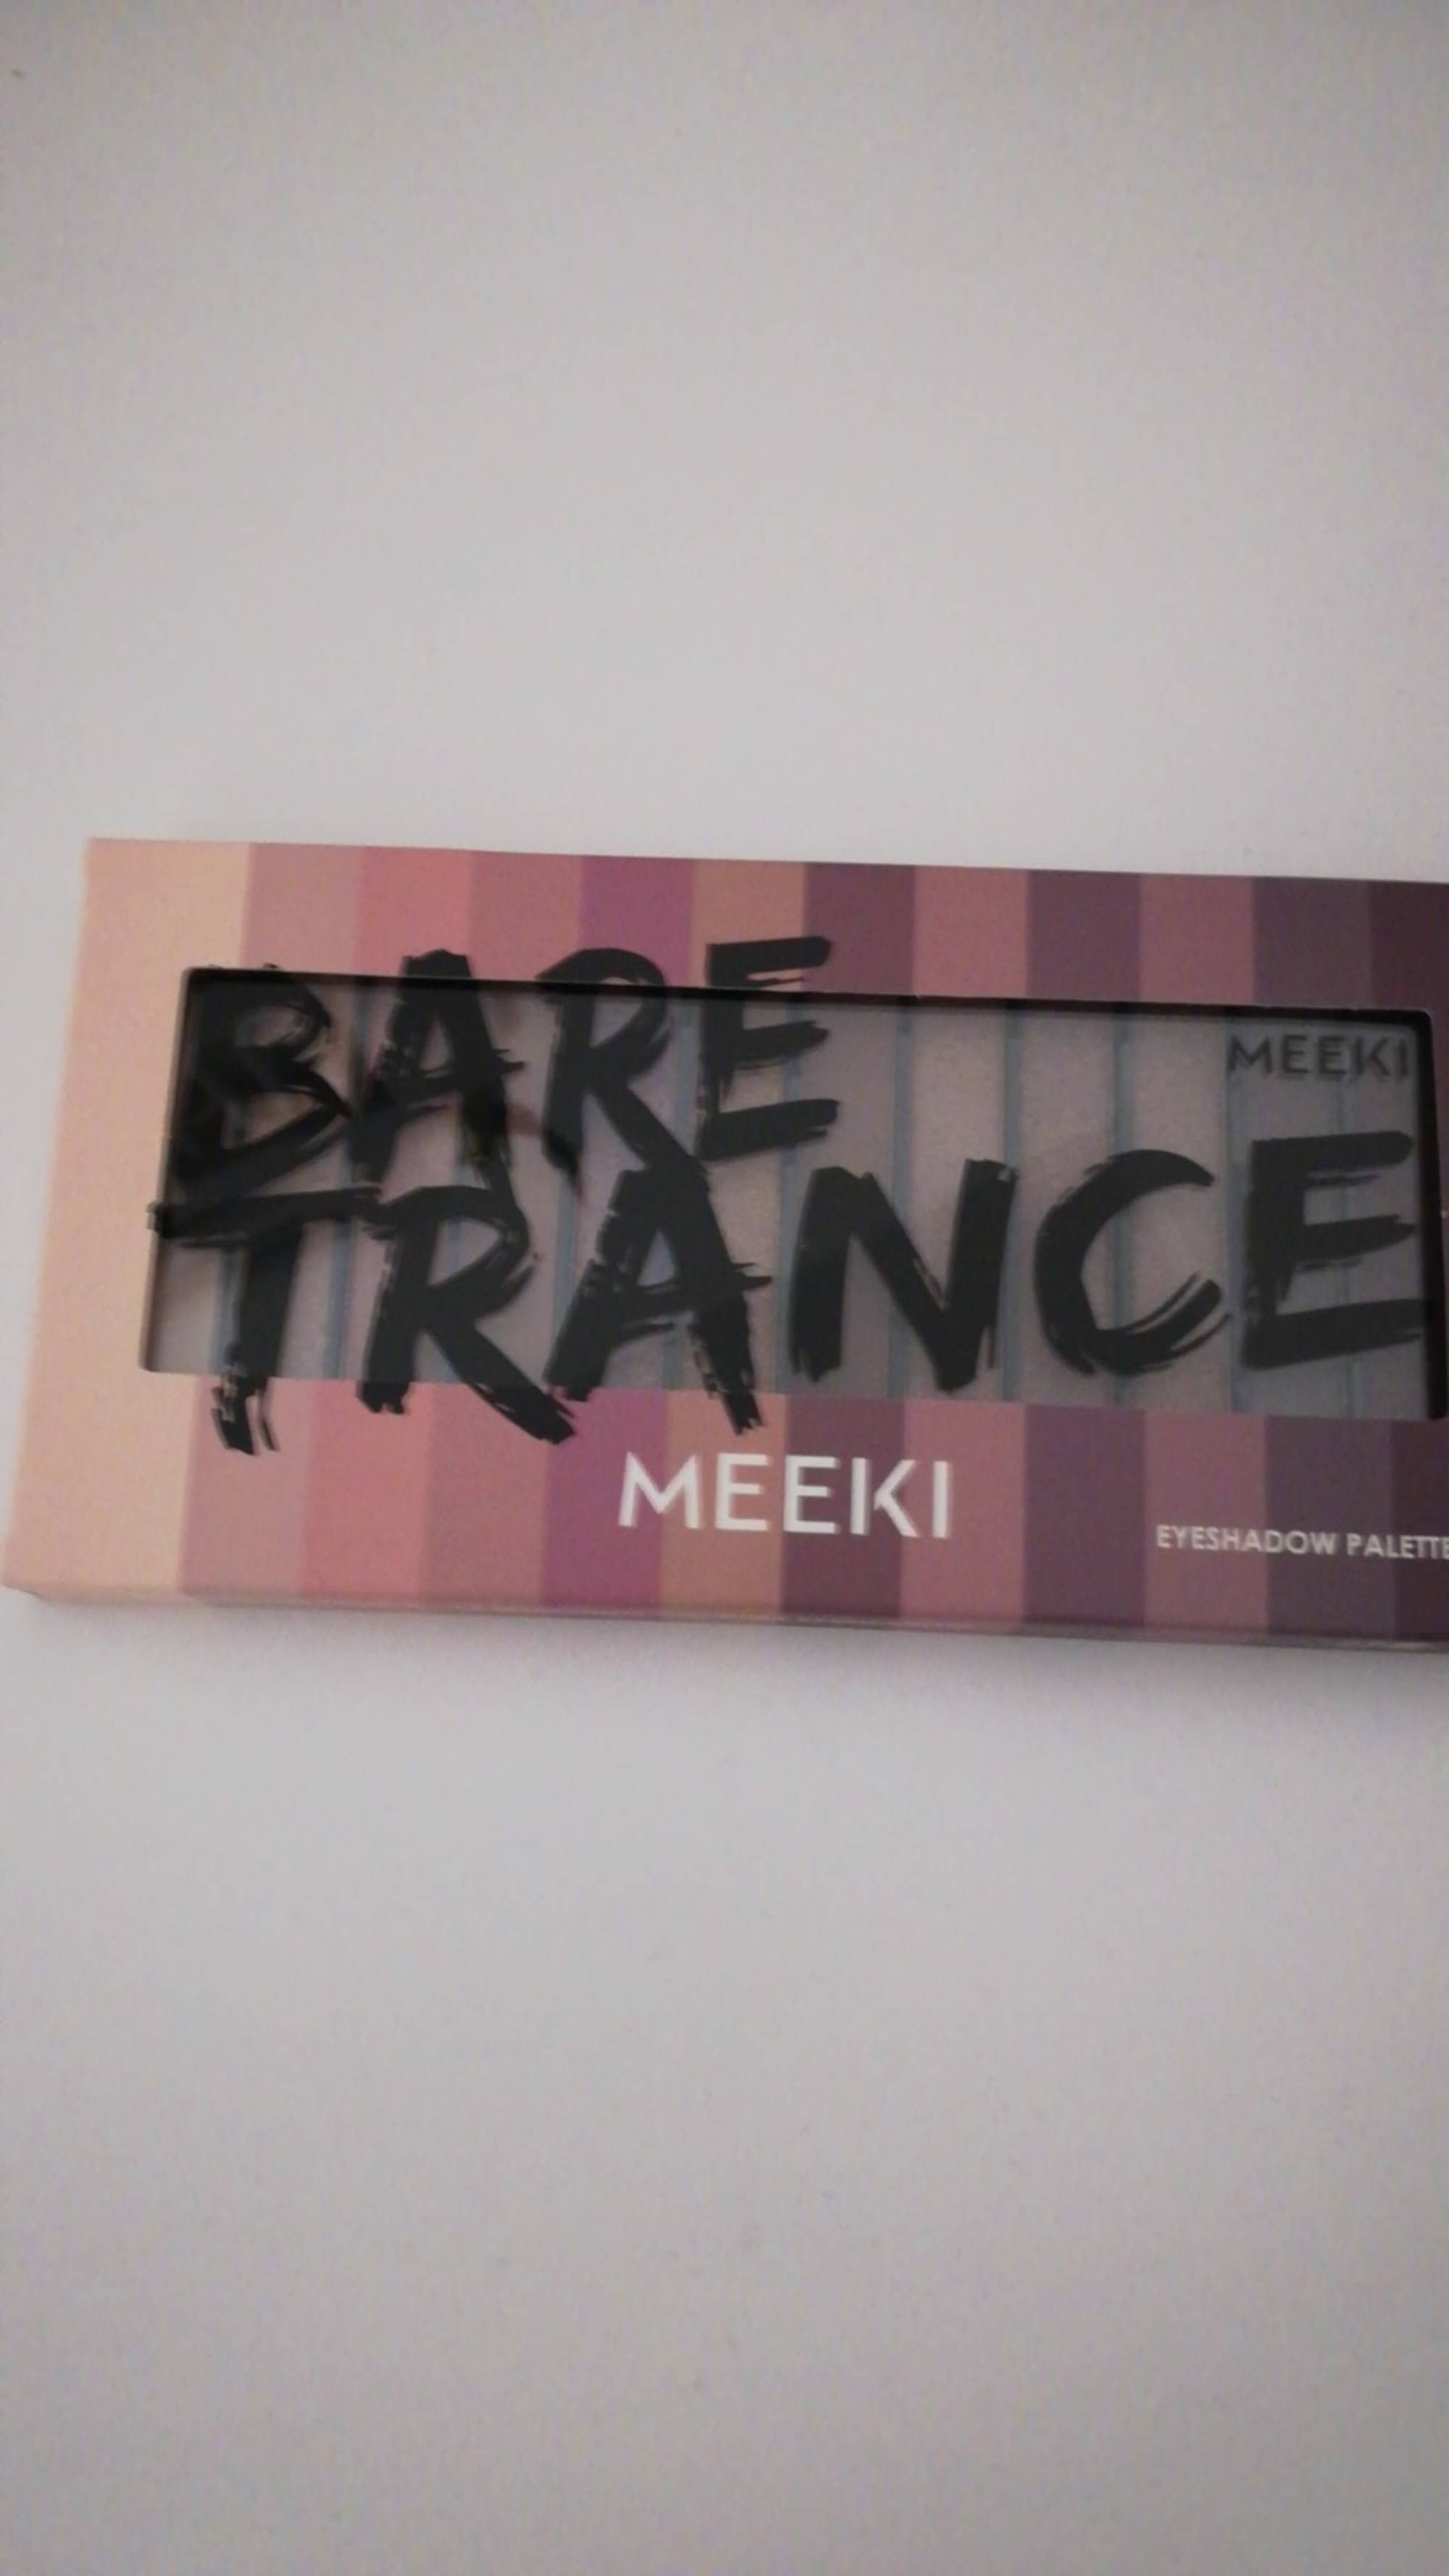 MEEKI - Bare trance - Palette de fard à paupières 